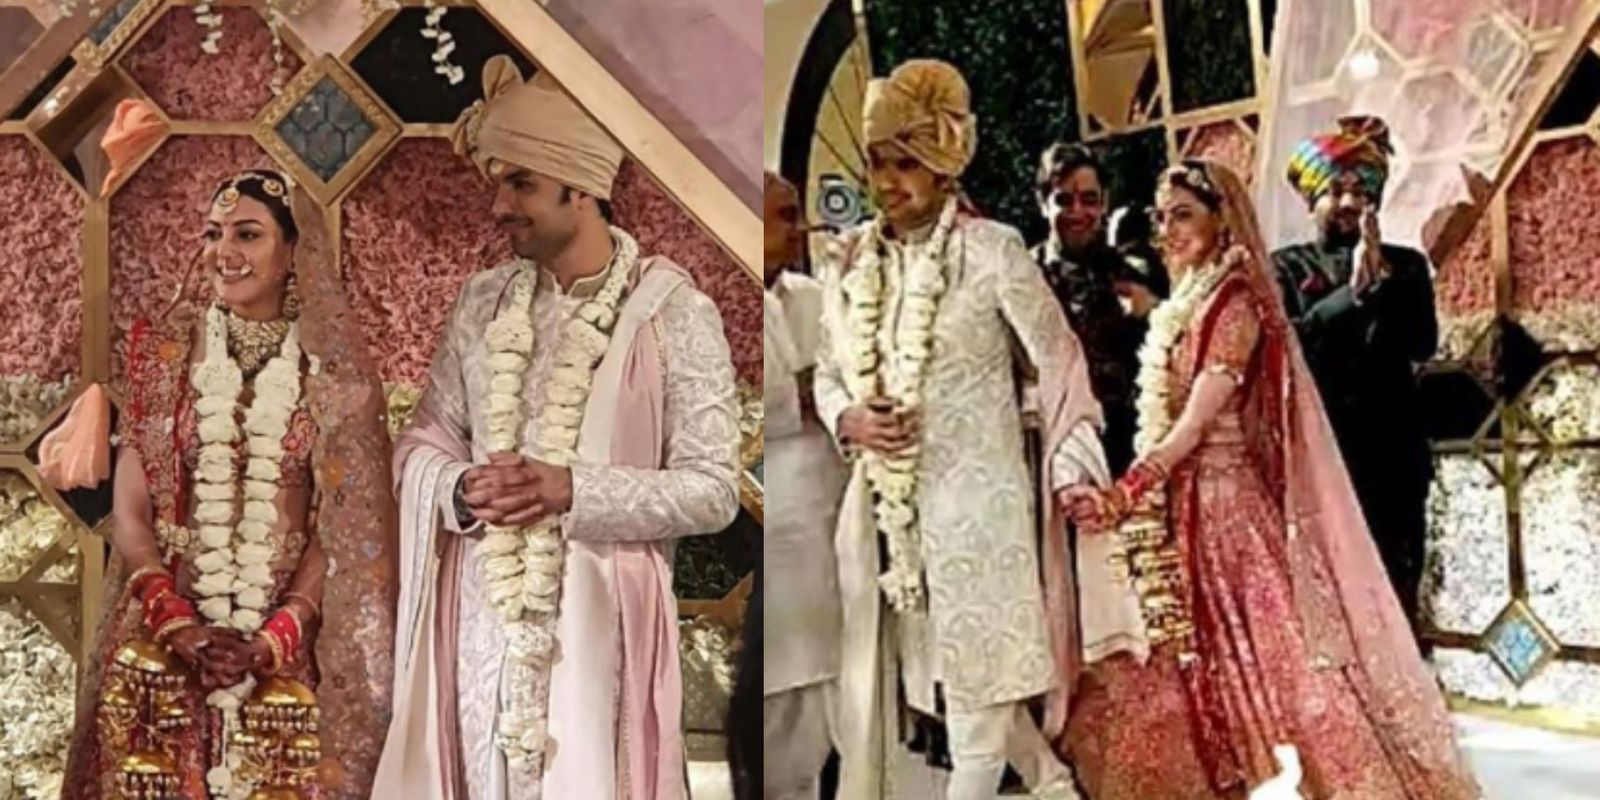 काजल अग्रवाल की शादी की तस्वीरें आई सामने, गौतम किचलू संग लिए सात फेरे 